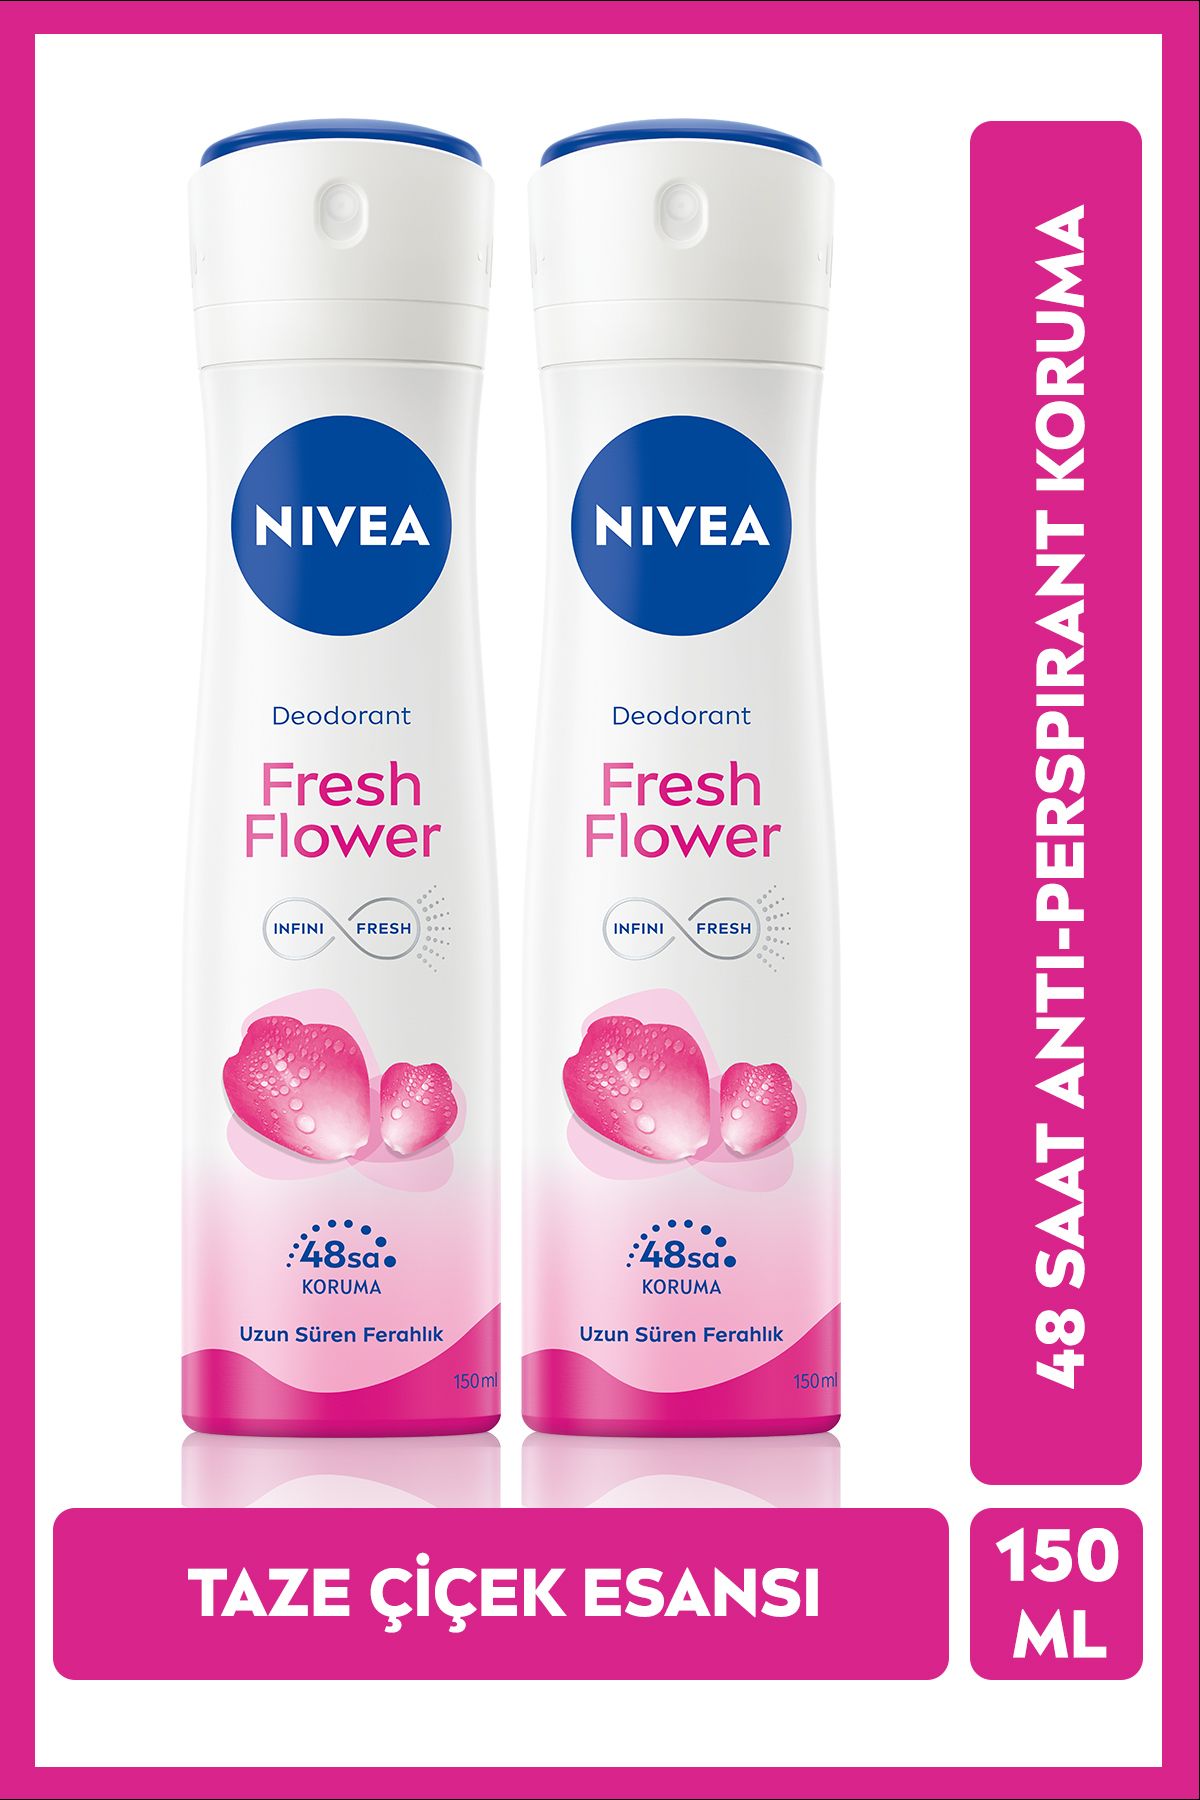 NIVEA Kadın Sprey Deodorant Fresh Flower 150 ml x2Adet, 48 Saat Koruma, Hızlı Kuruma, Uzun Süren Ferahlık